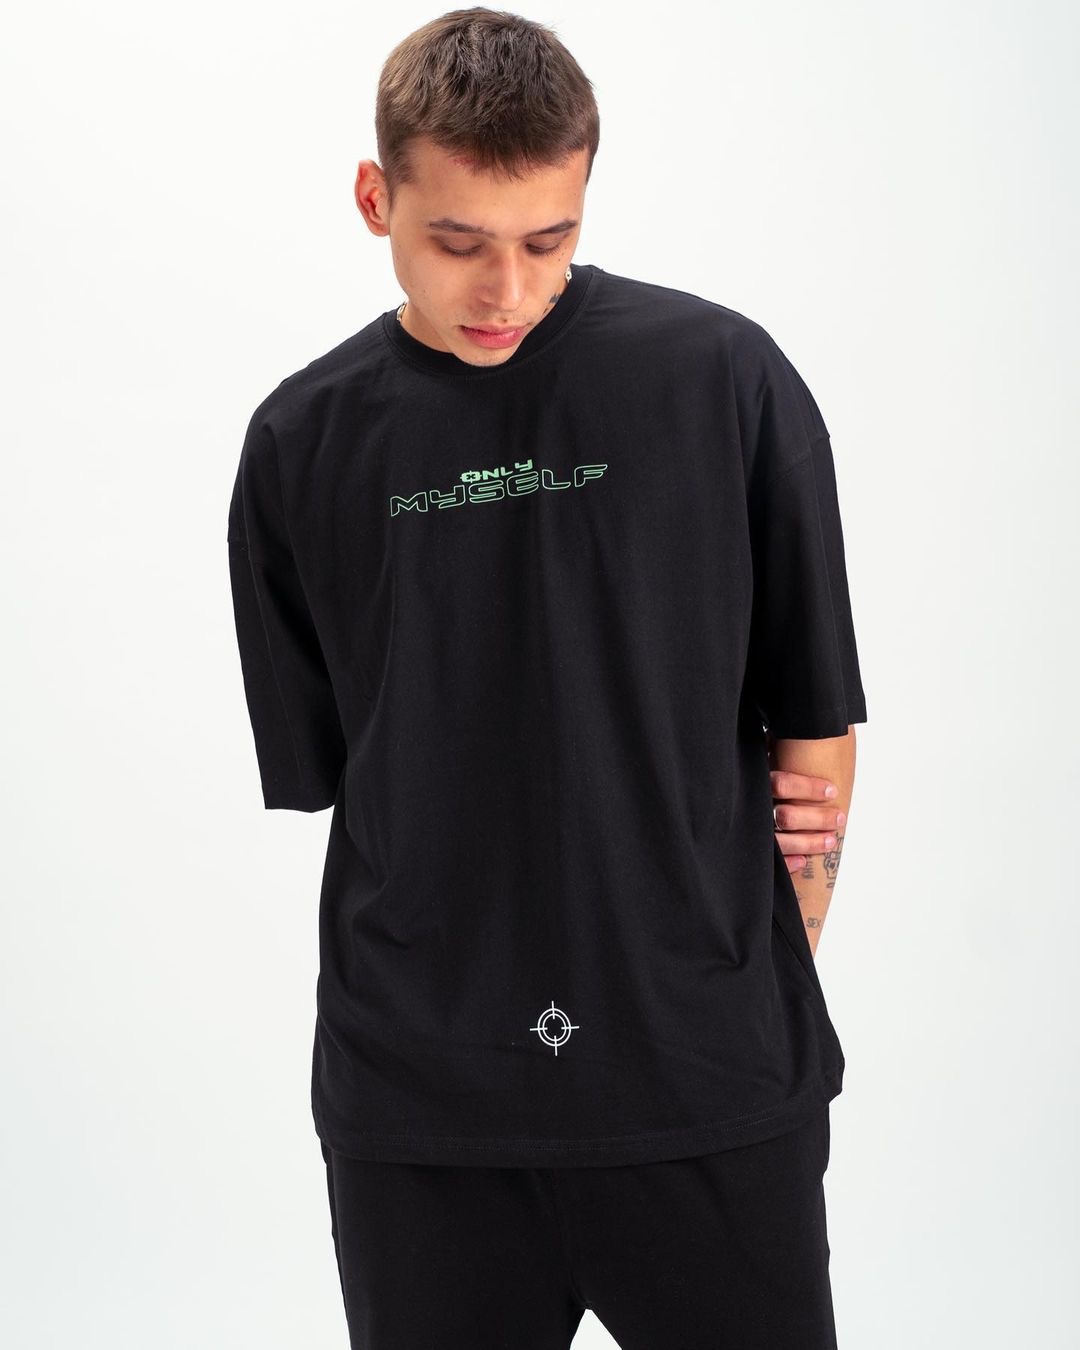 Μαύρη κοντομάνικη μπλούζα με τύπωμα(OVERSIZED)-Only myself-respire-5623032 (3)